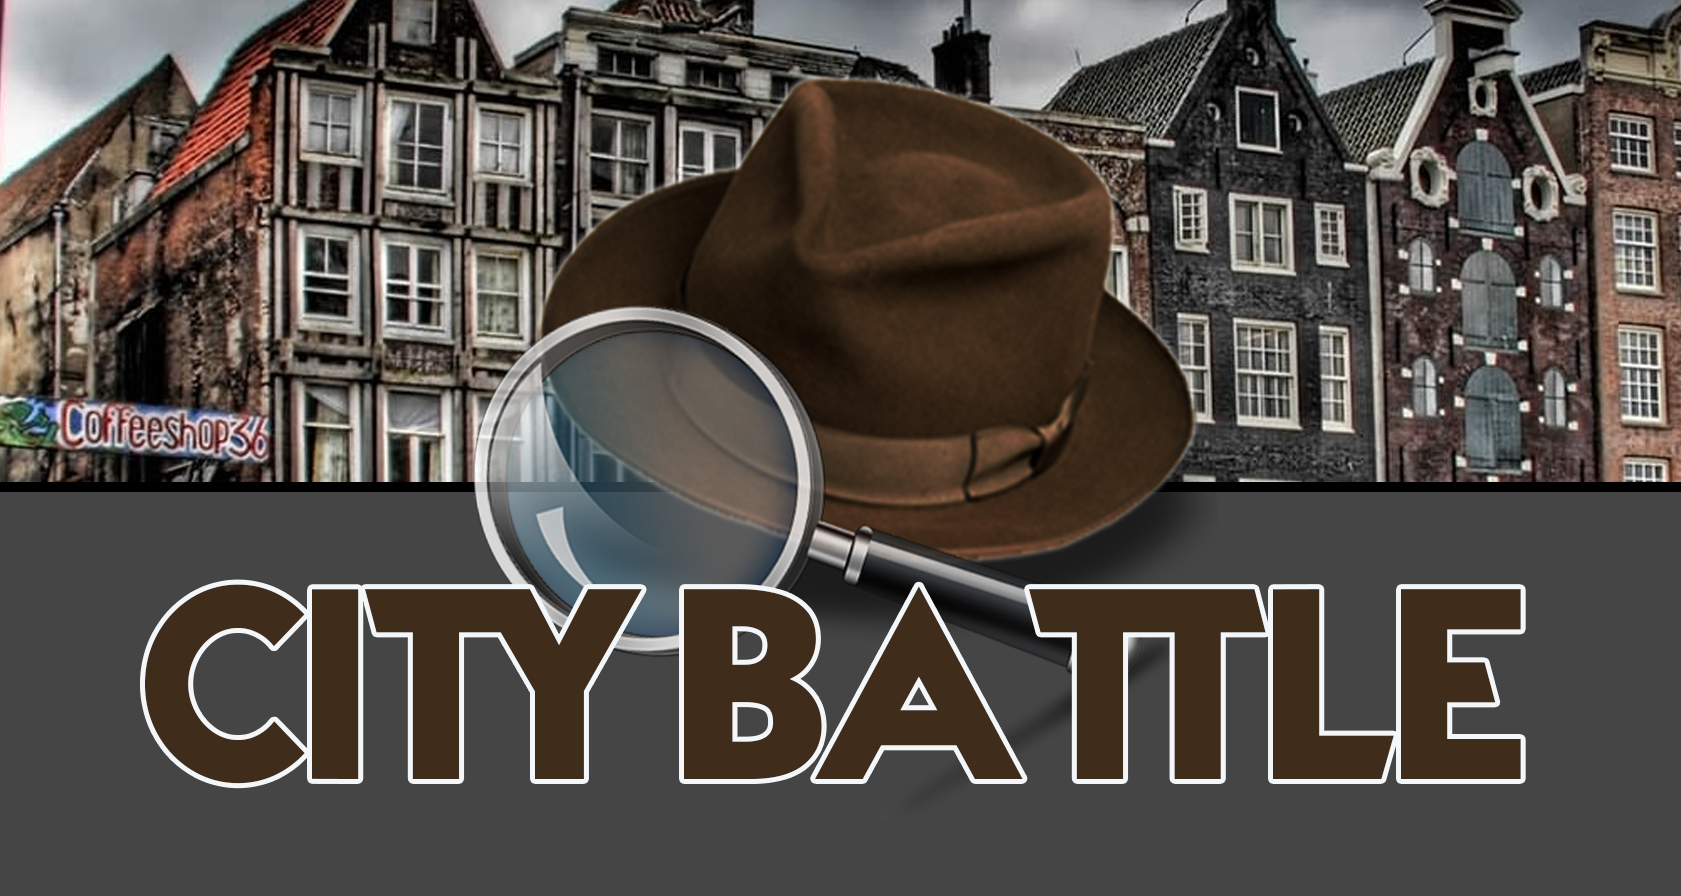 Personeelsuitje Haarlem: De Ultieme City Battle